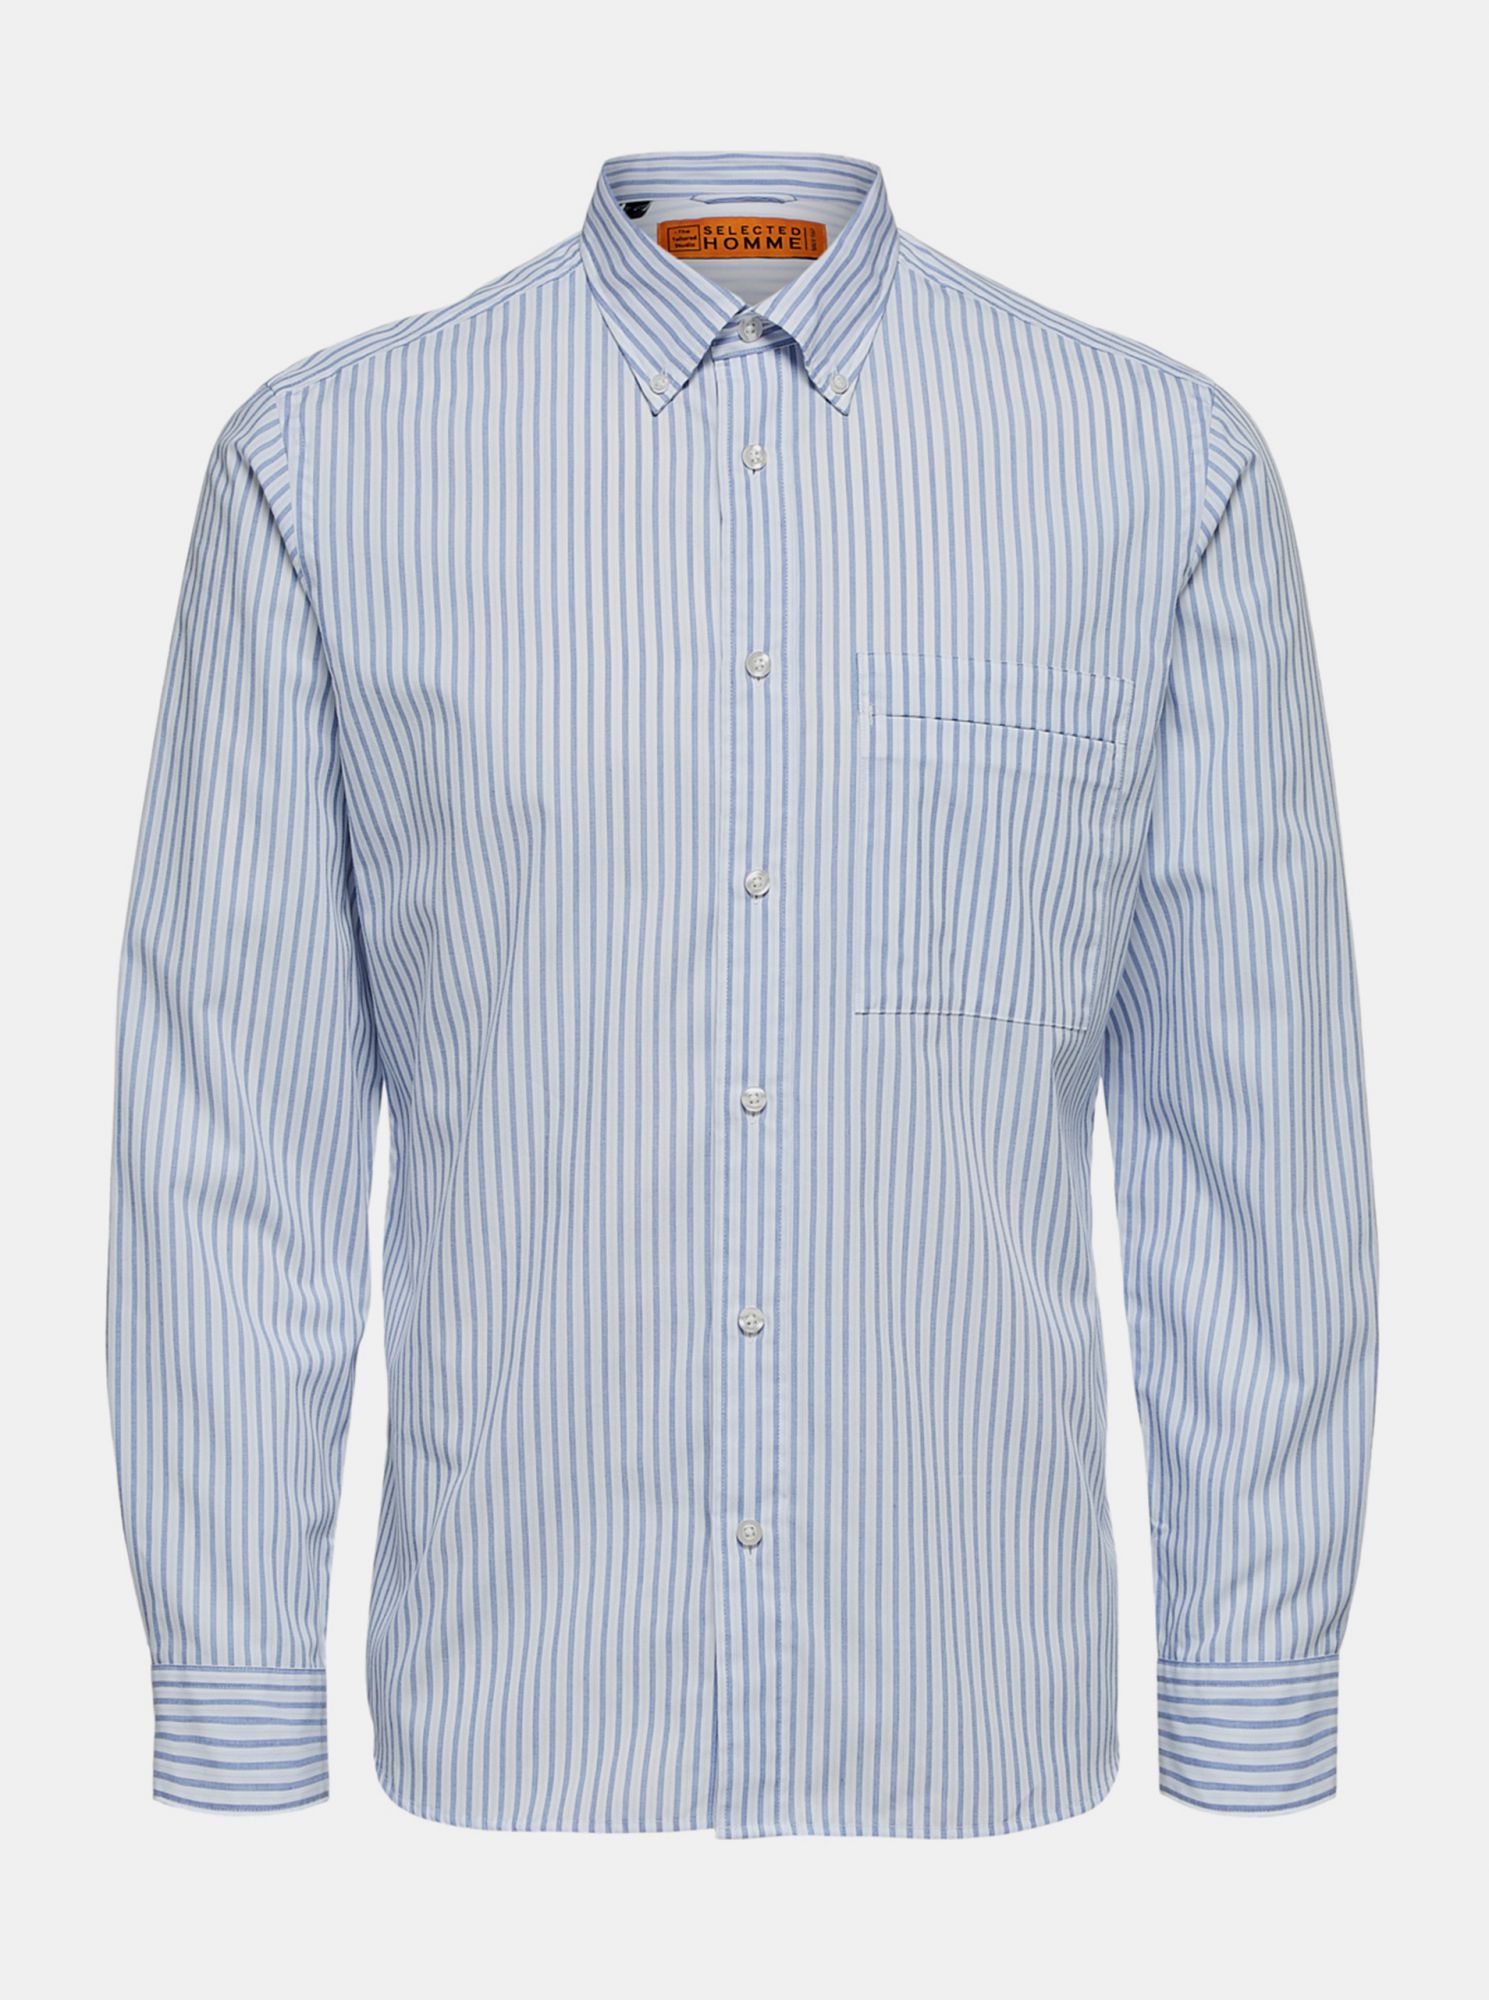 Selected Homme modro-bílá pánská košile